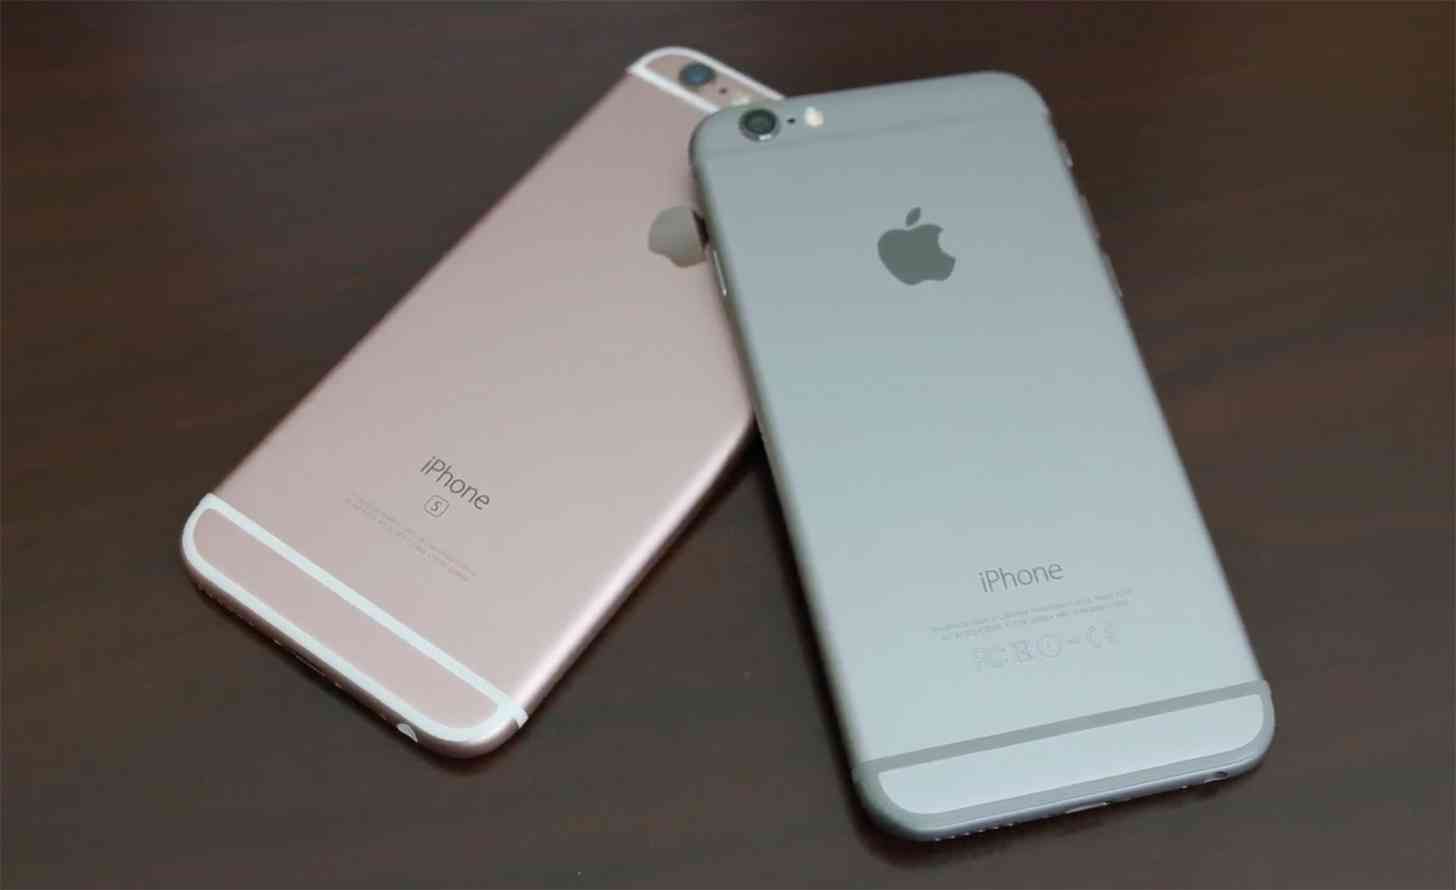 iPhone 6, iPhone 6s comparison